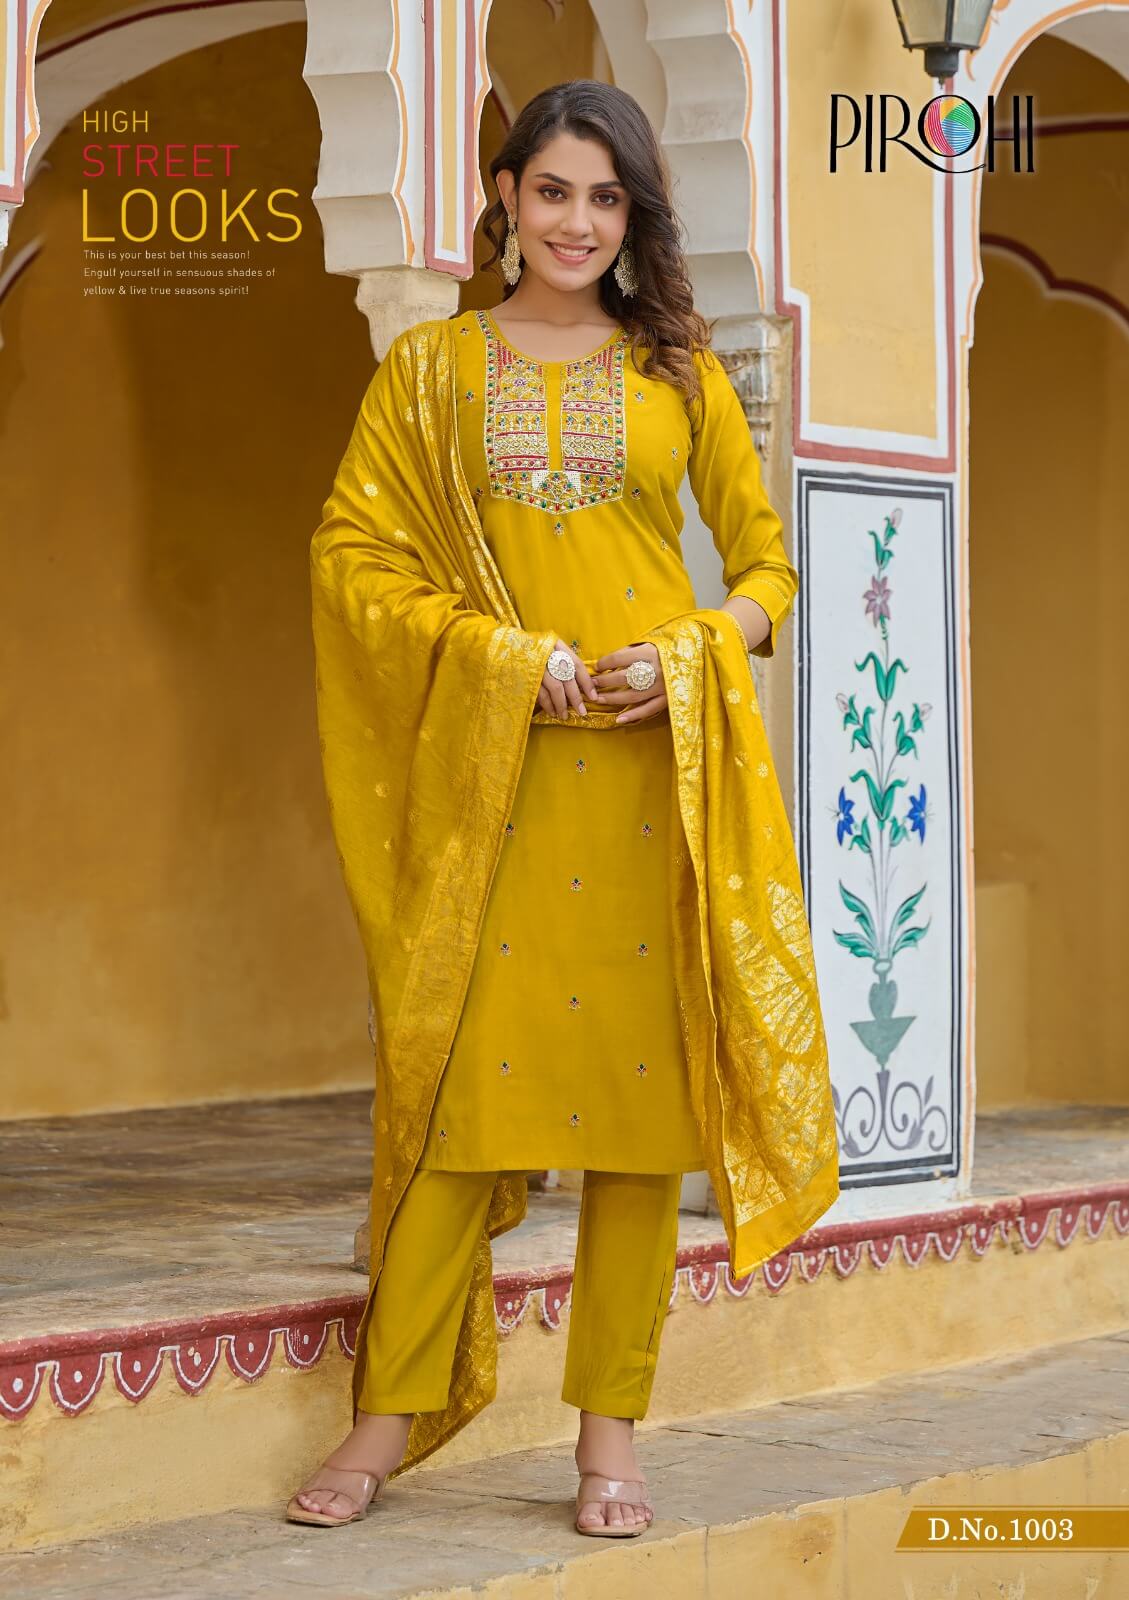 Pirohi By Rajavir Mahiye Readymade Dress Catalog collection 3